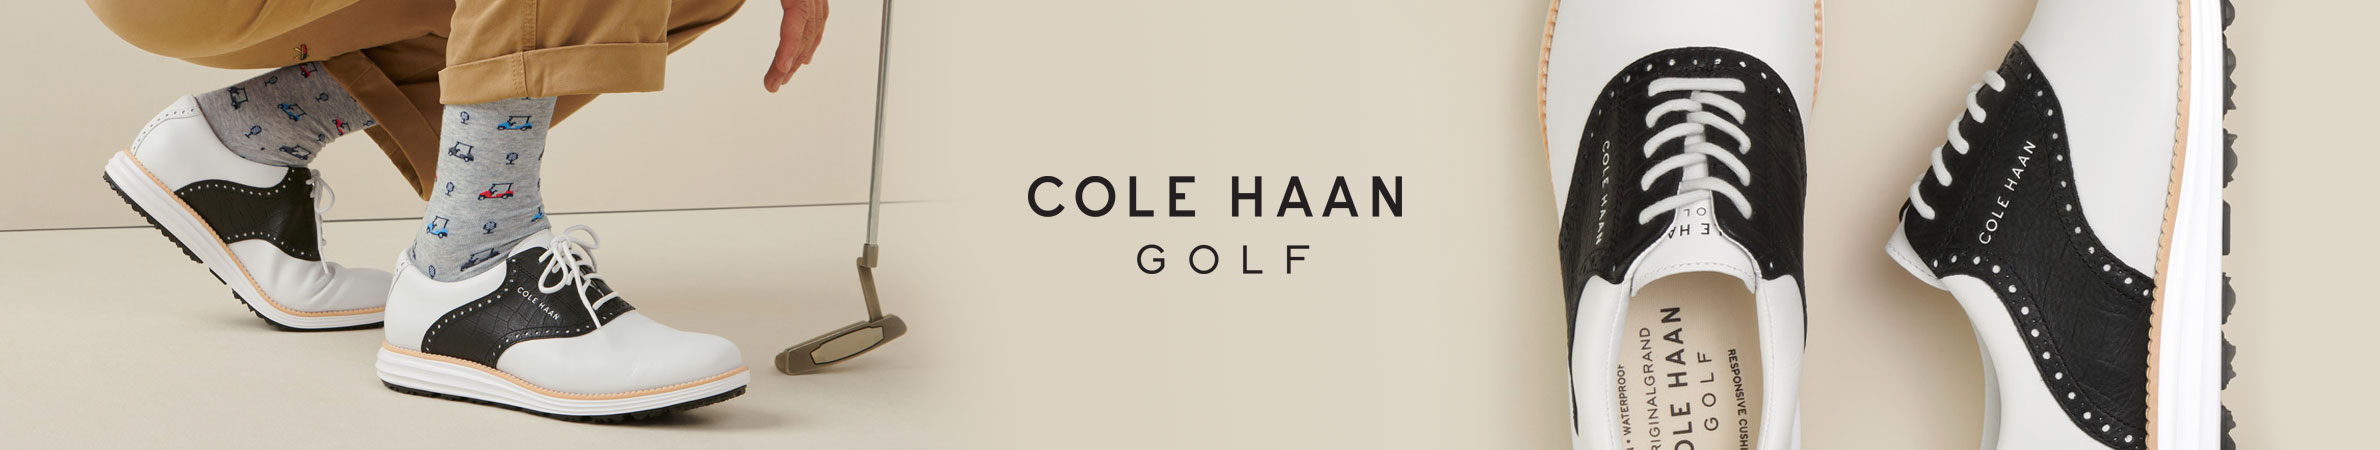 Cole Haan Golf